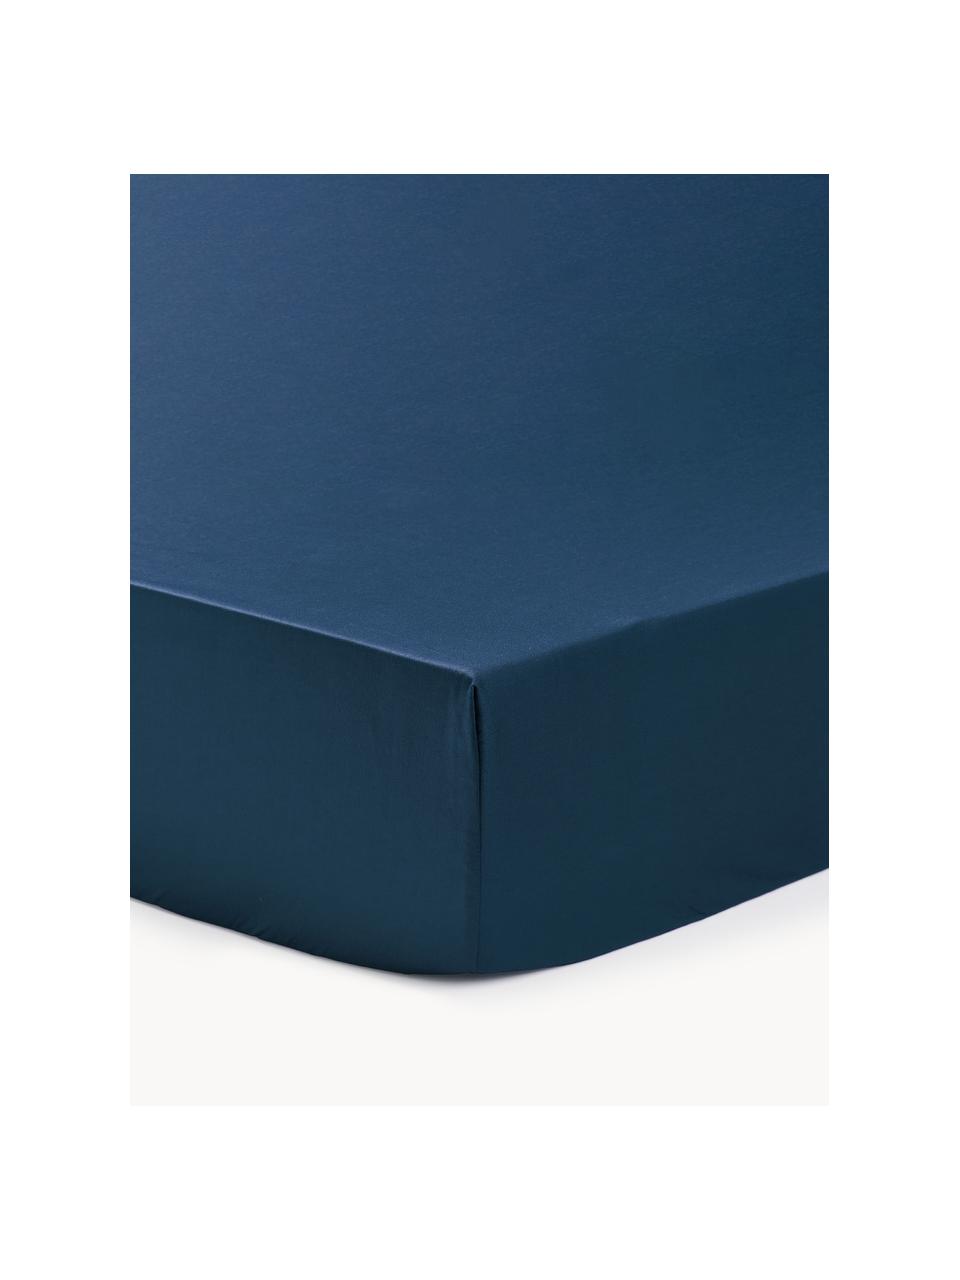 Drap-housse en satin de coton pour surmatelas Premium, Bleu foncé, larg. 90 x long. 200 cm, haut. 15 cm